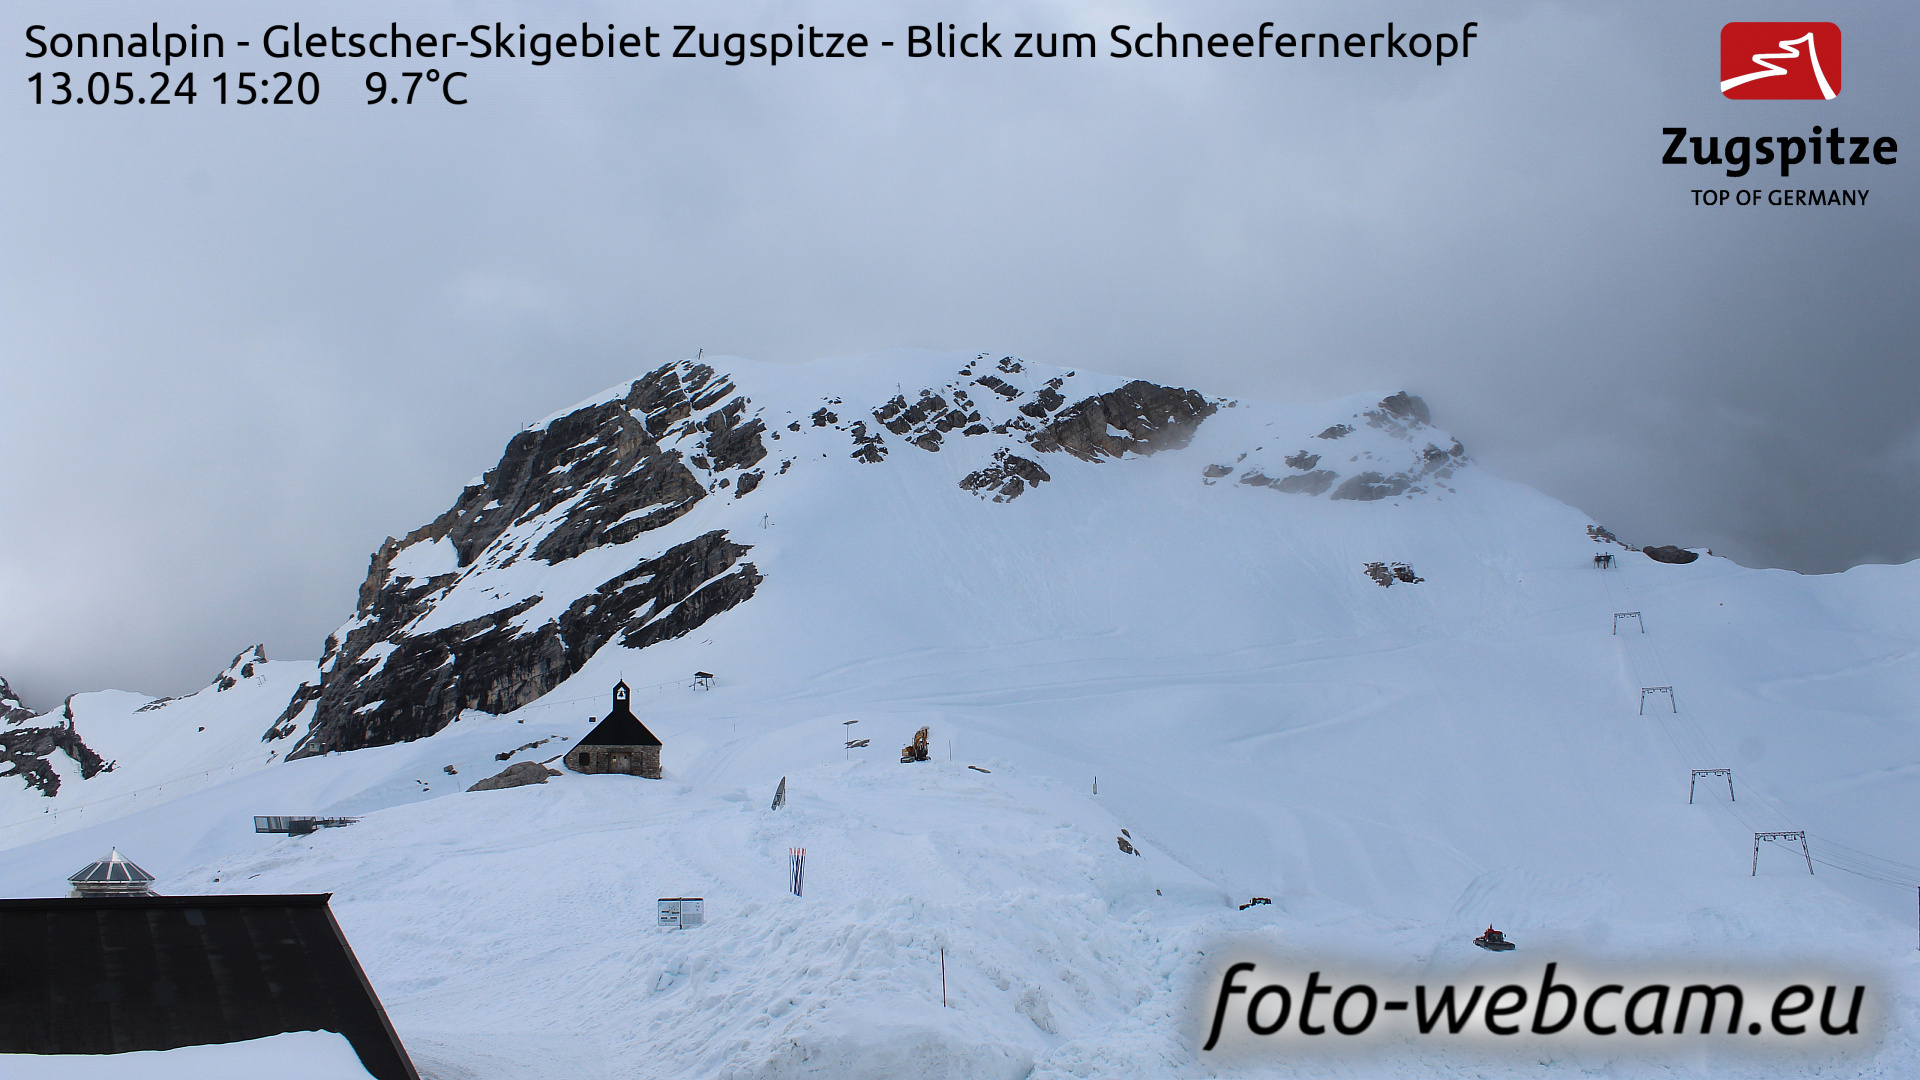 Zugspitze So. 15:24